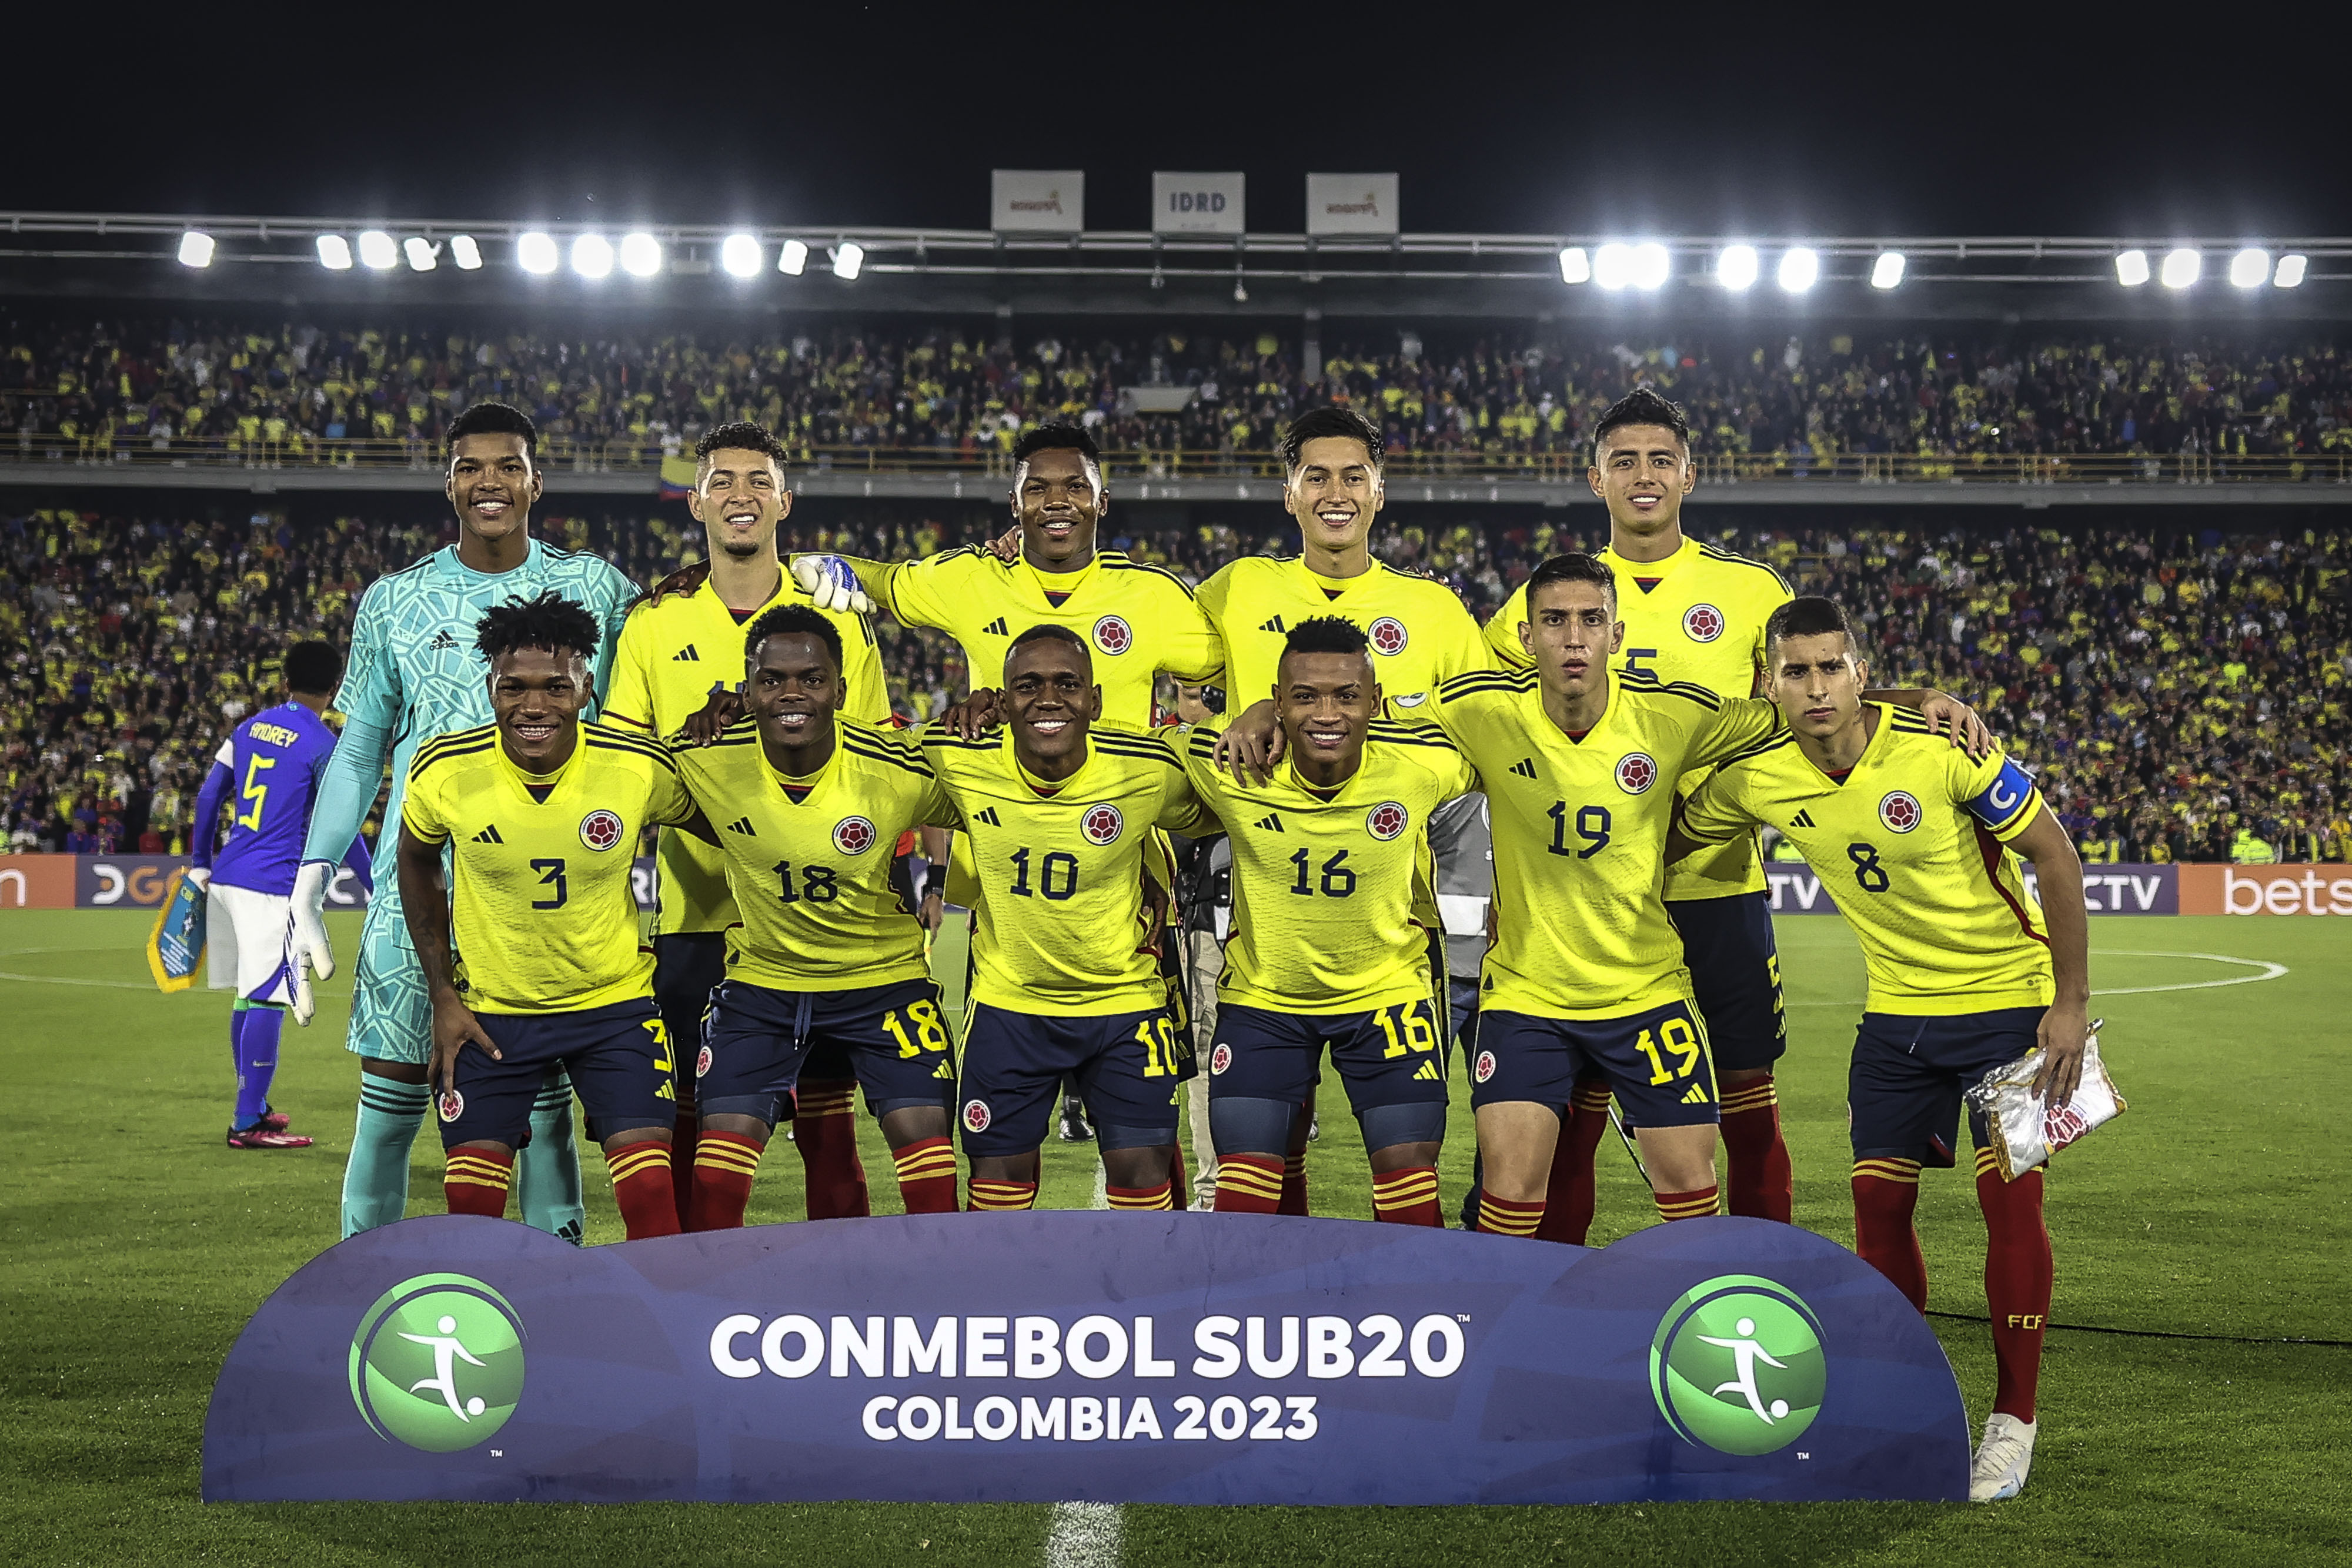 La selección Colombia sub-20 jugaría el mundial en Suramérica 